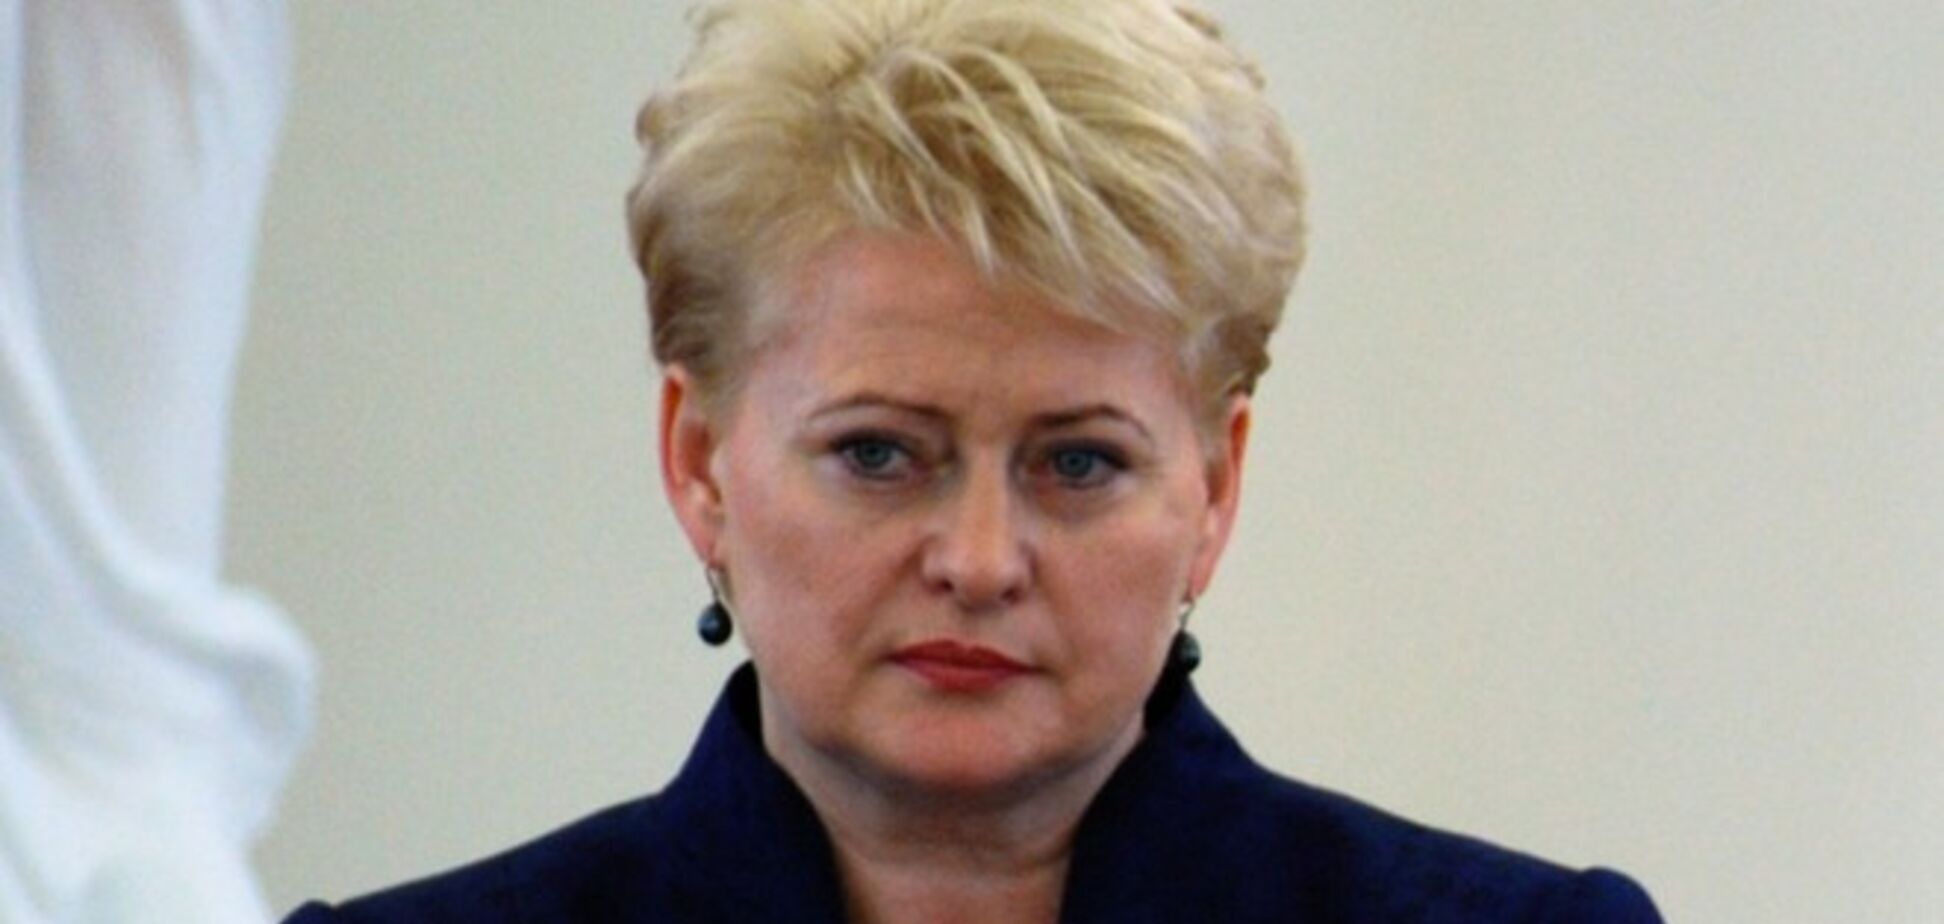 Литва единственная 'воздержалась' при голосовании за нового председателя ЕС по внешней политике и безопасности